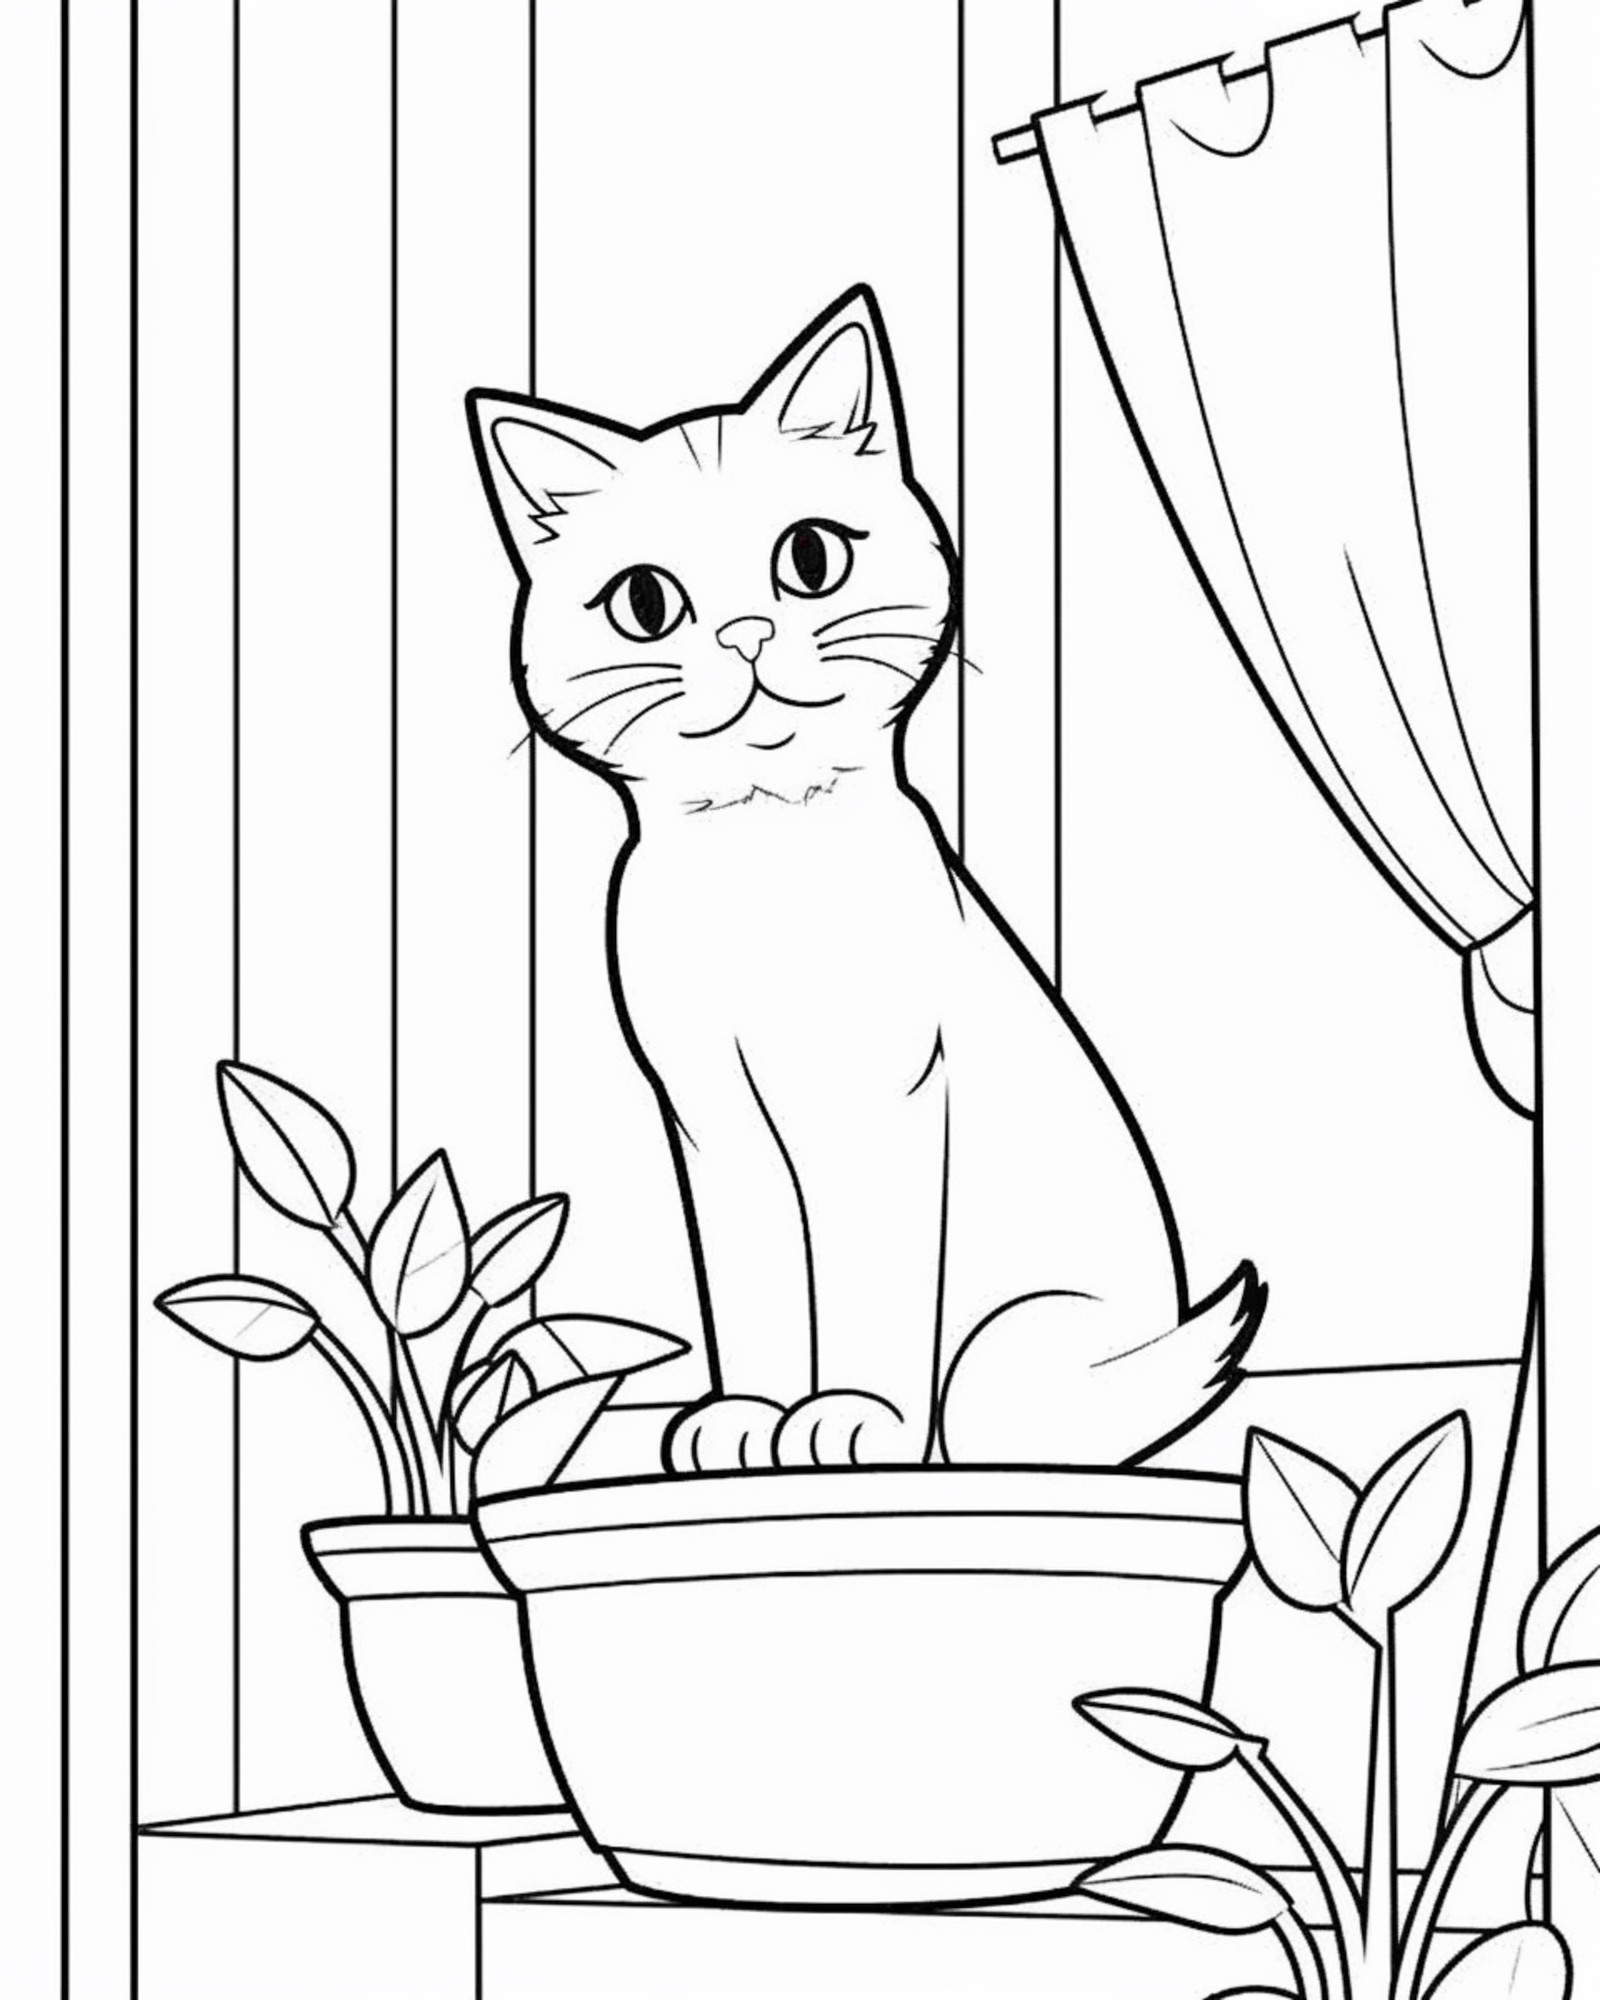 Раскраска для детей: кошка на подоконнике сидит в цветочном горшке